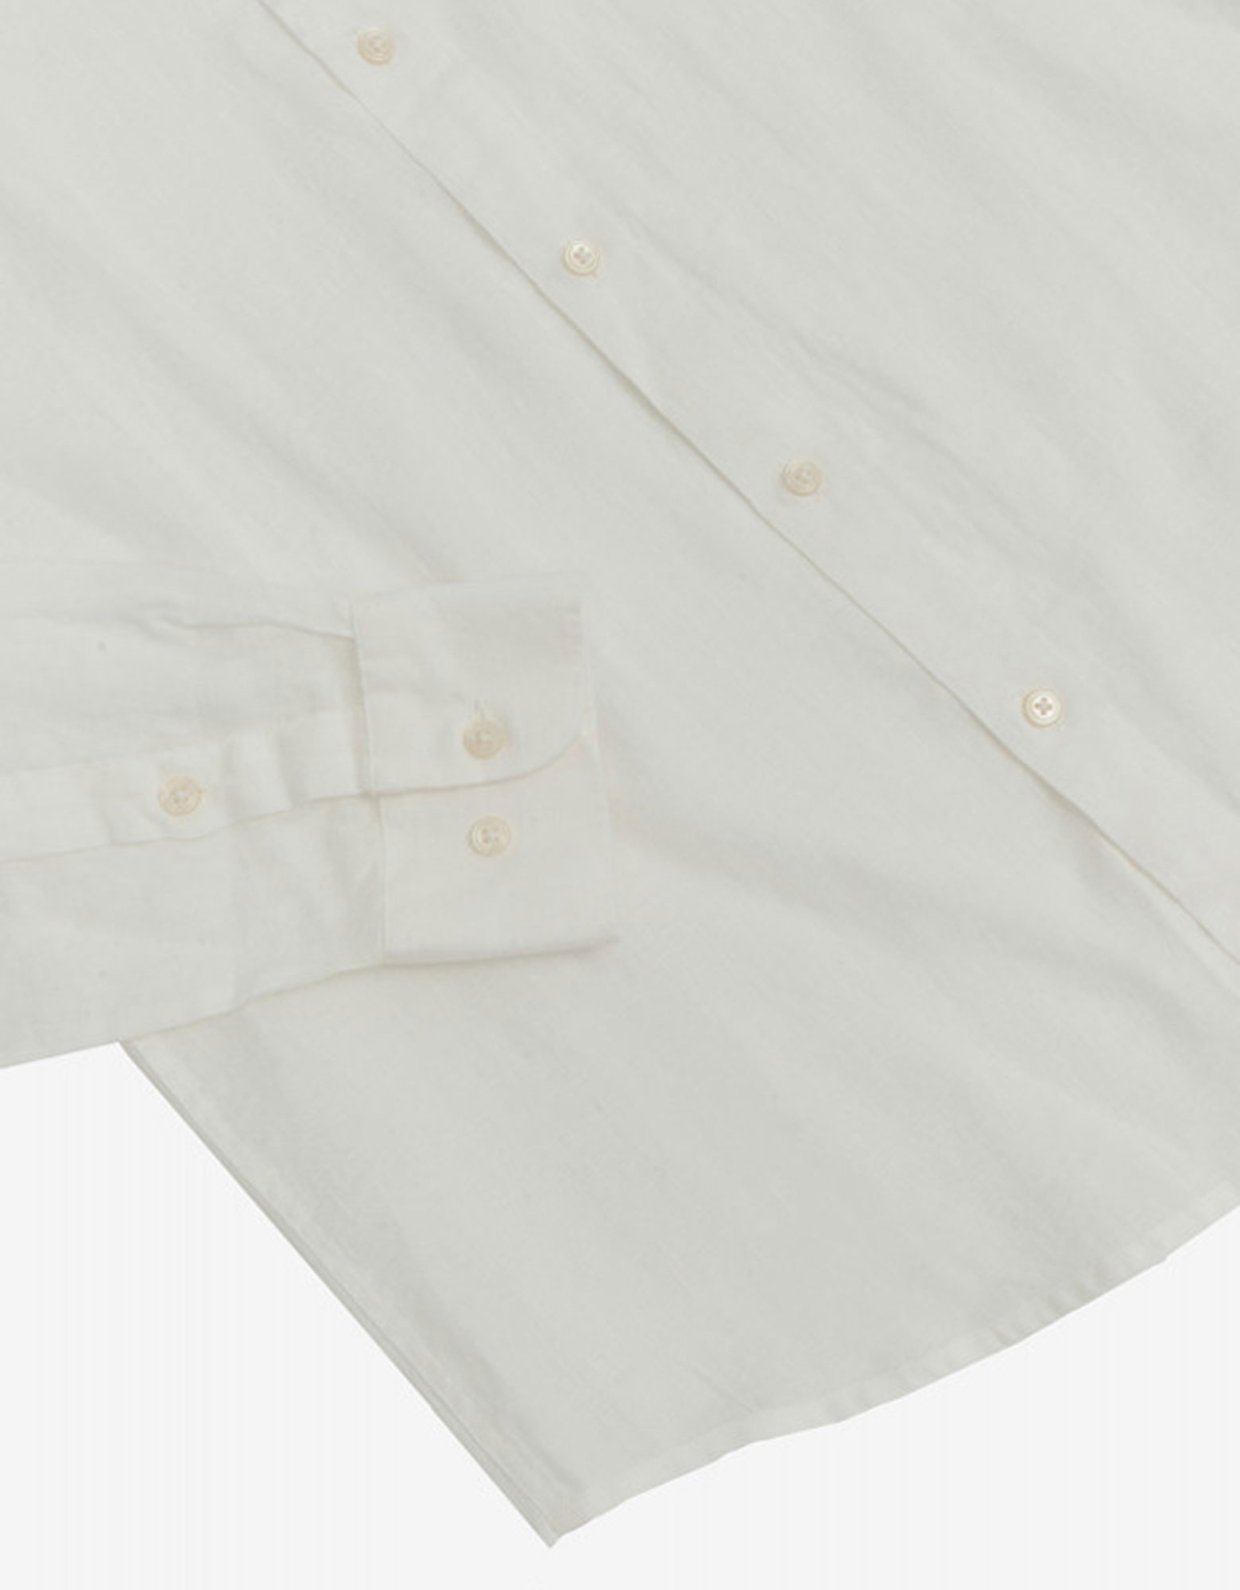 Gianni Lupo Linen collar shirt white